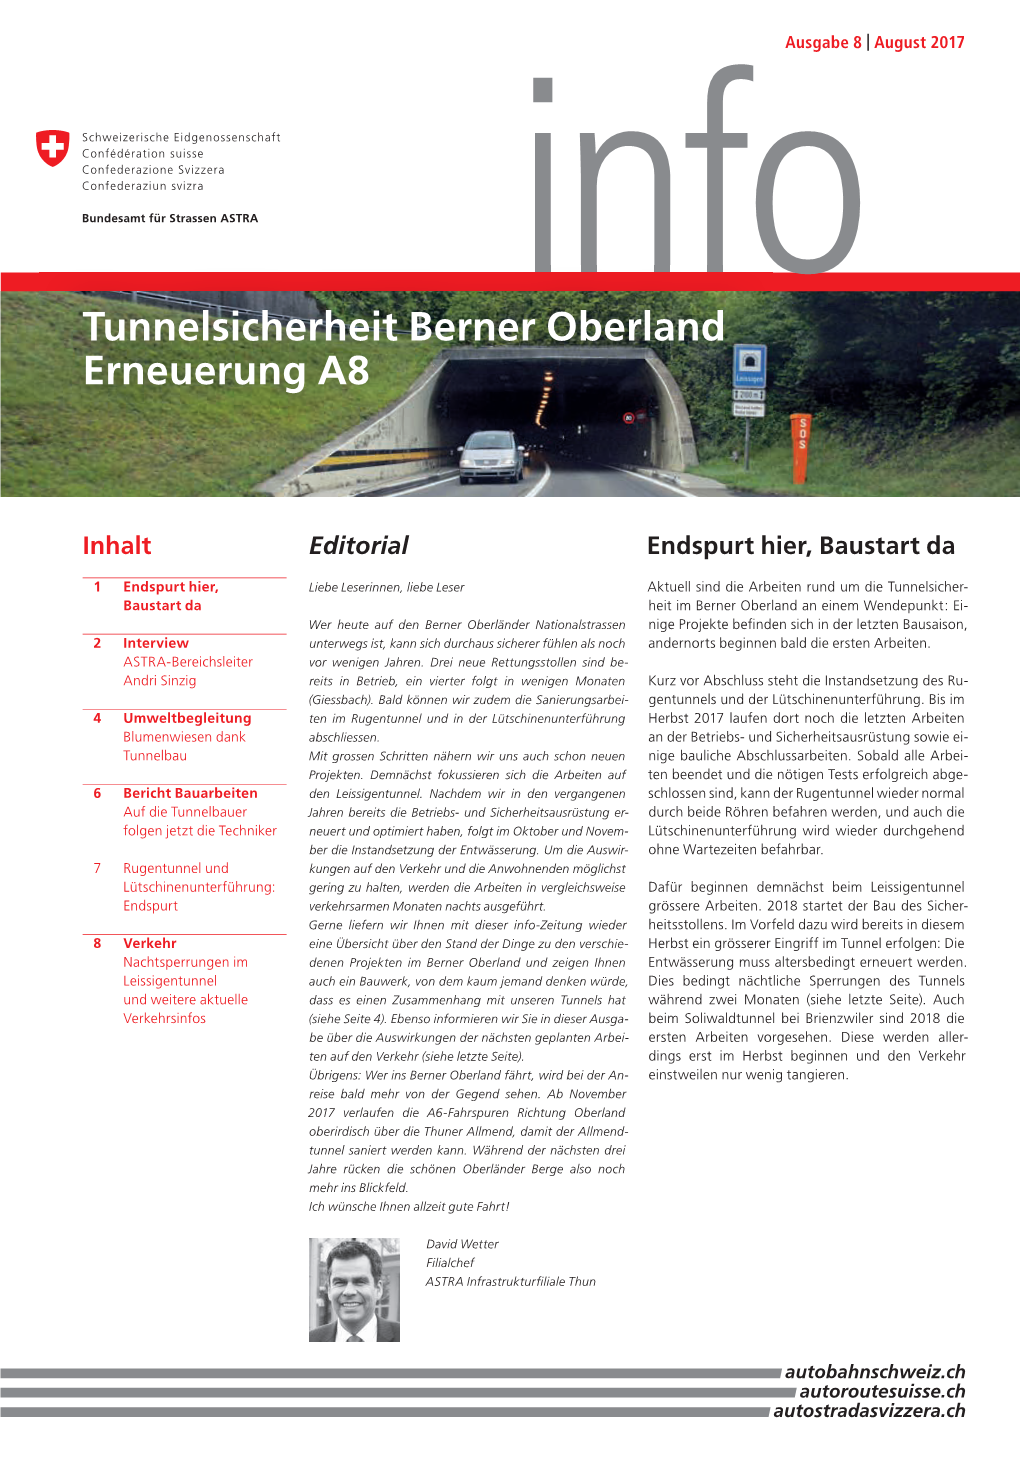 Tunnelsicherheit Berner Oberland Erneuerung A8